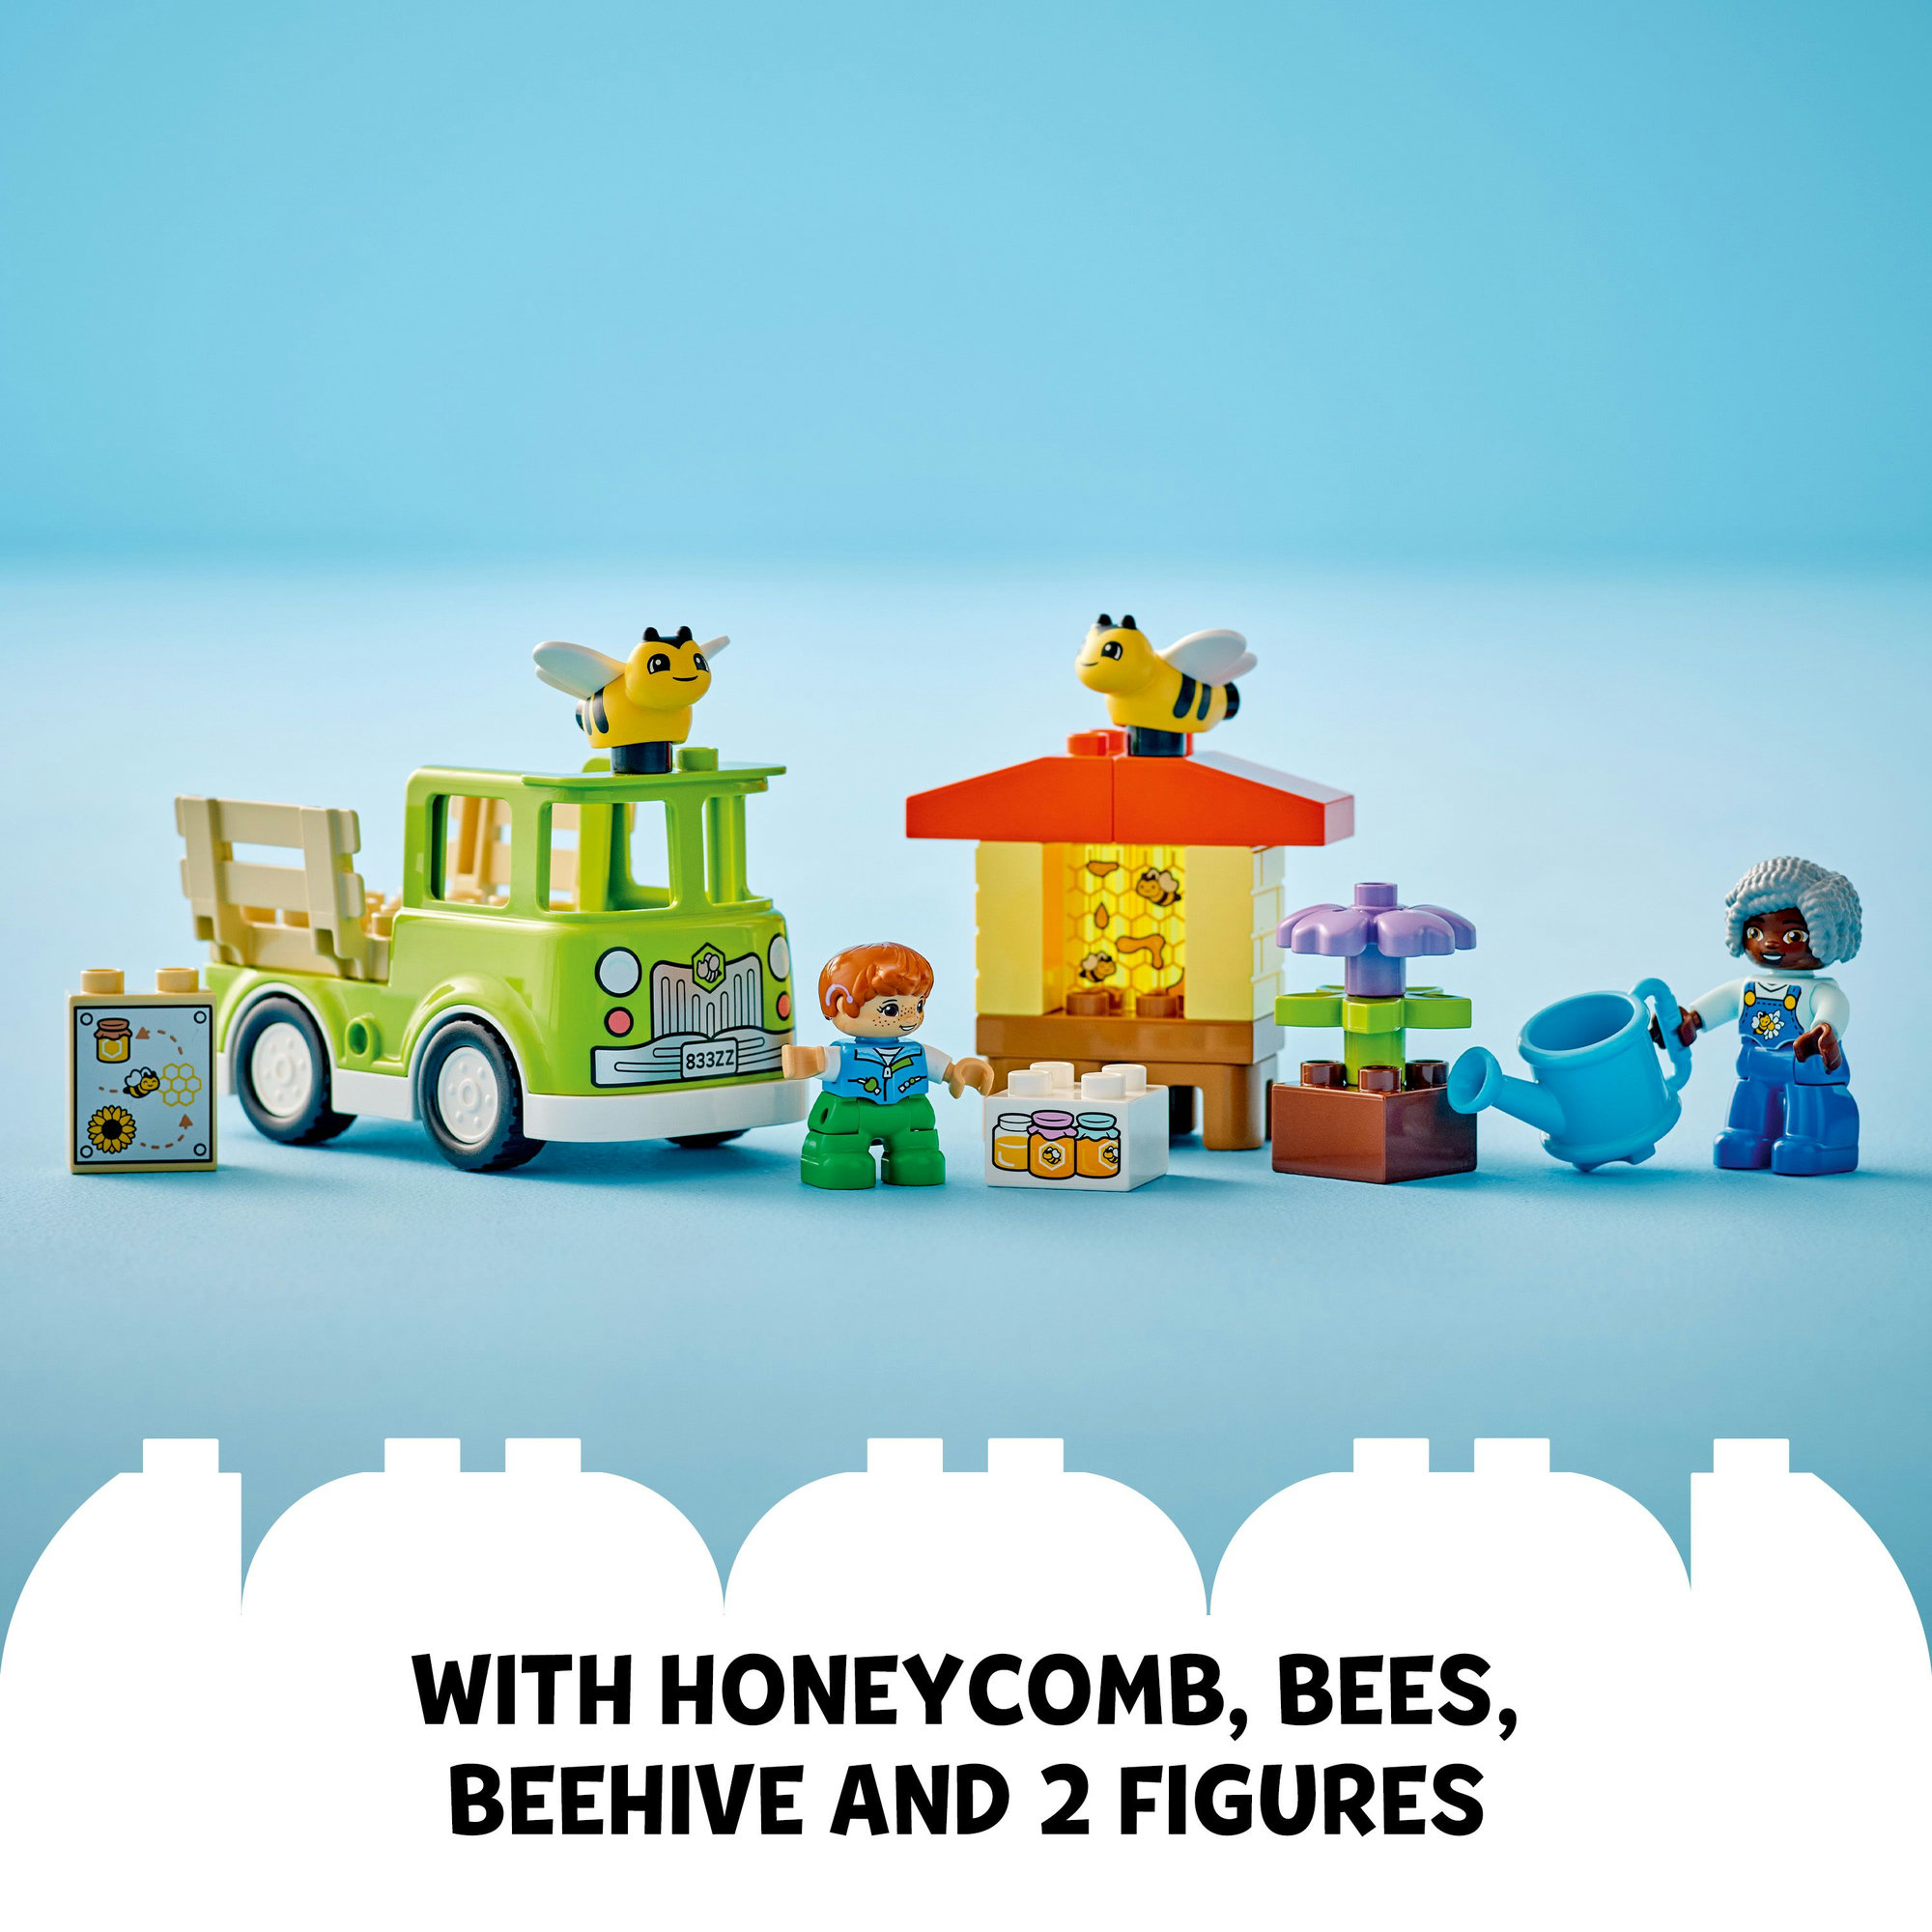 LEGO DUPLO 10419 Đồ chơi lắp ráp Nông trại ong của bé (22 chi tiết)